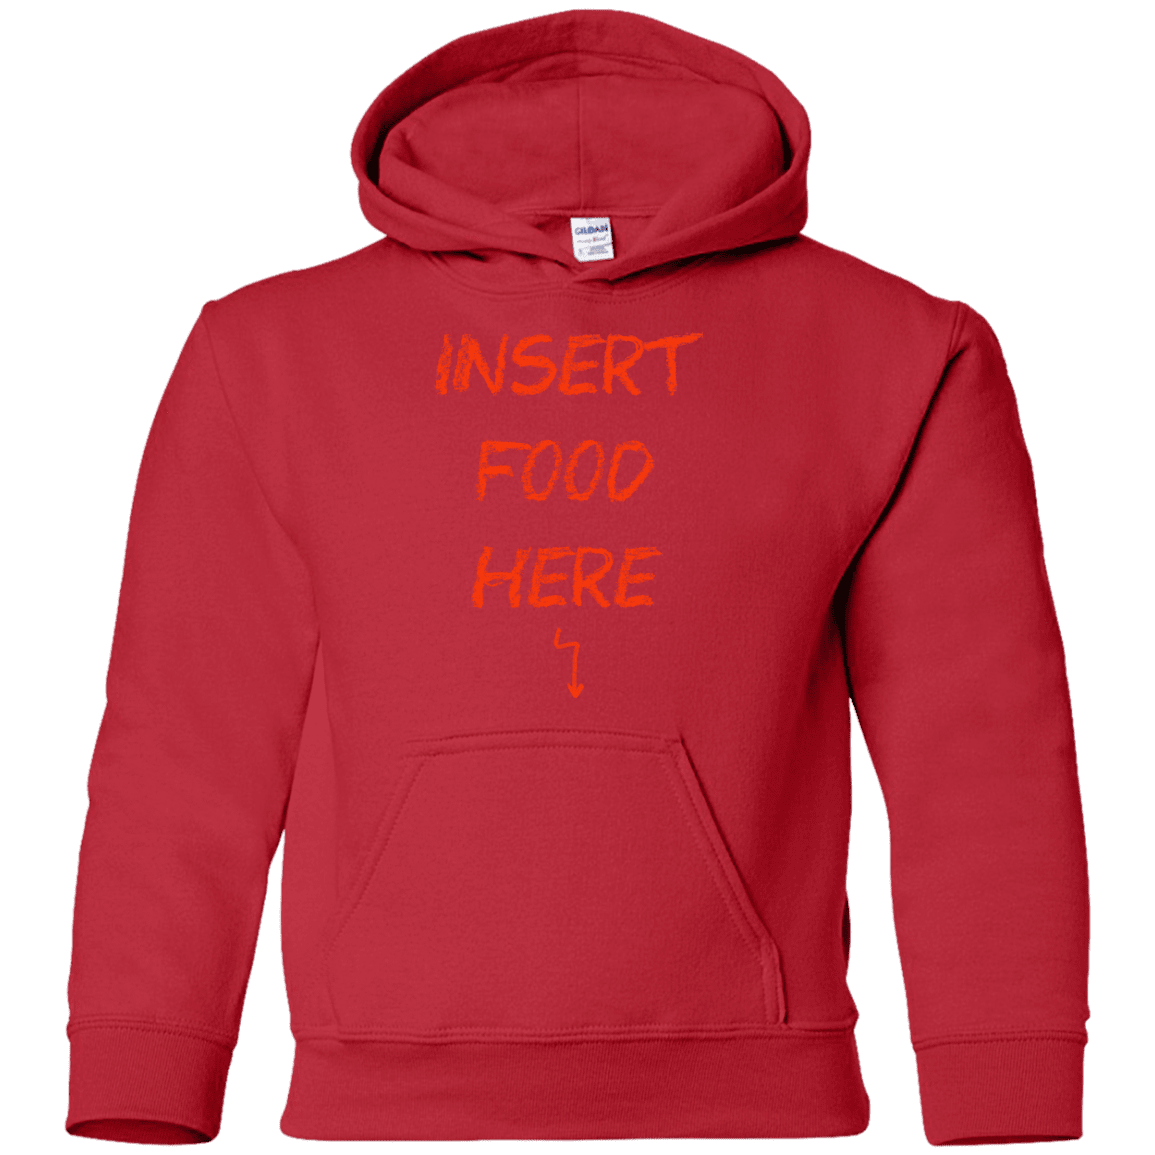 Sweatshirts Red / YS Insert Food Youth Hoodie